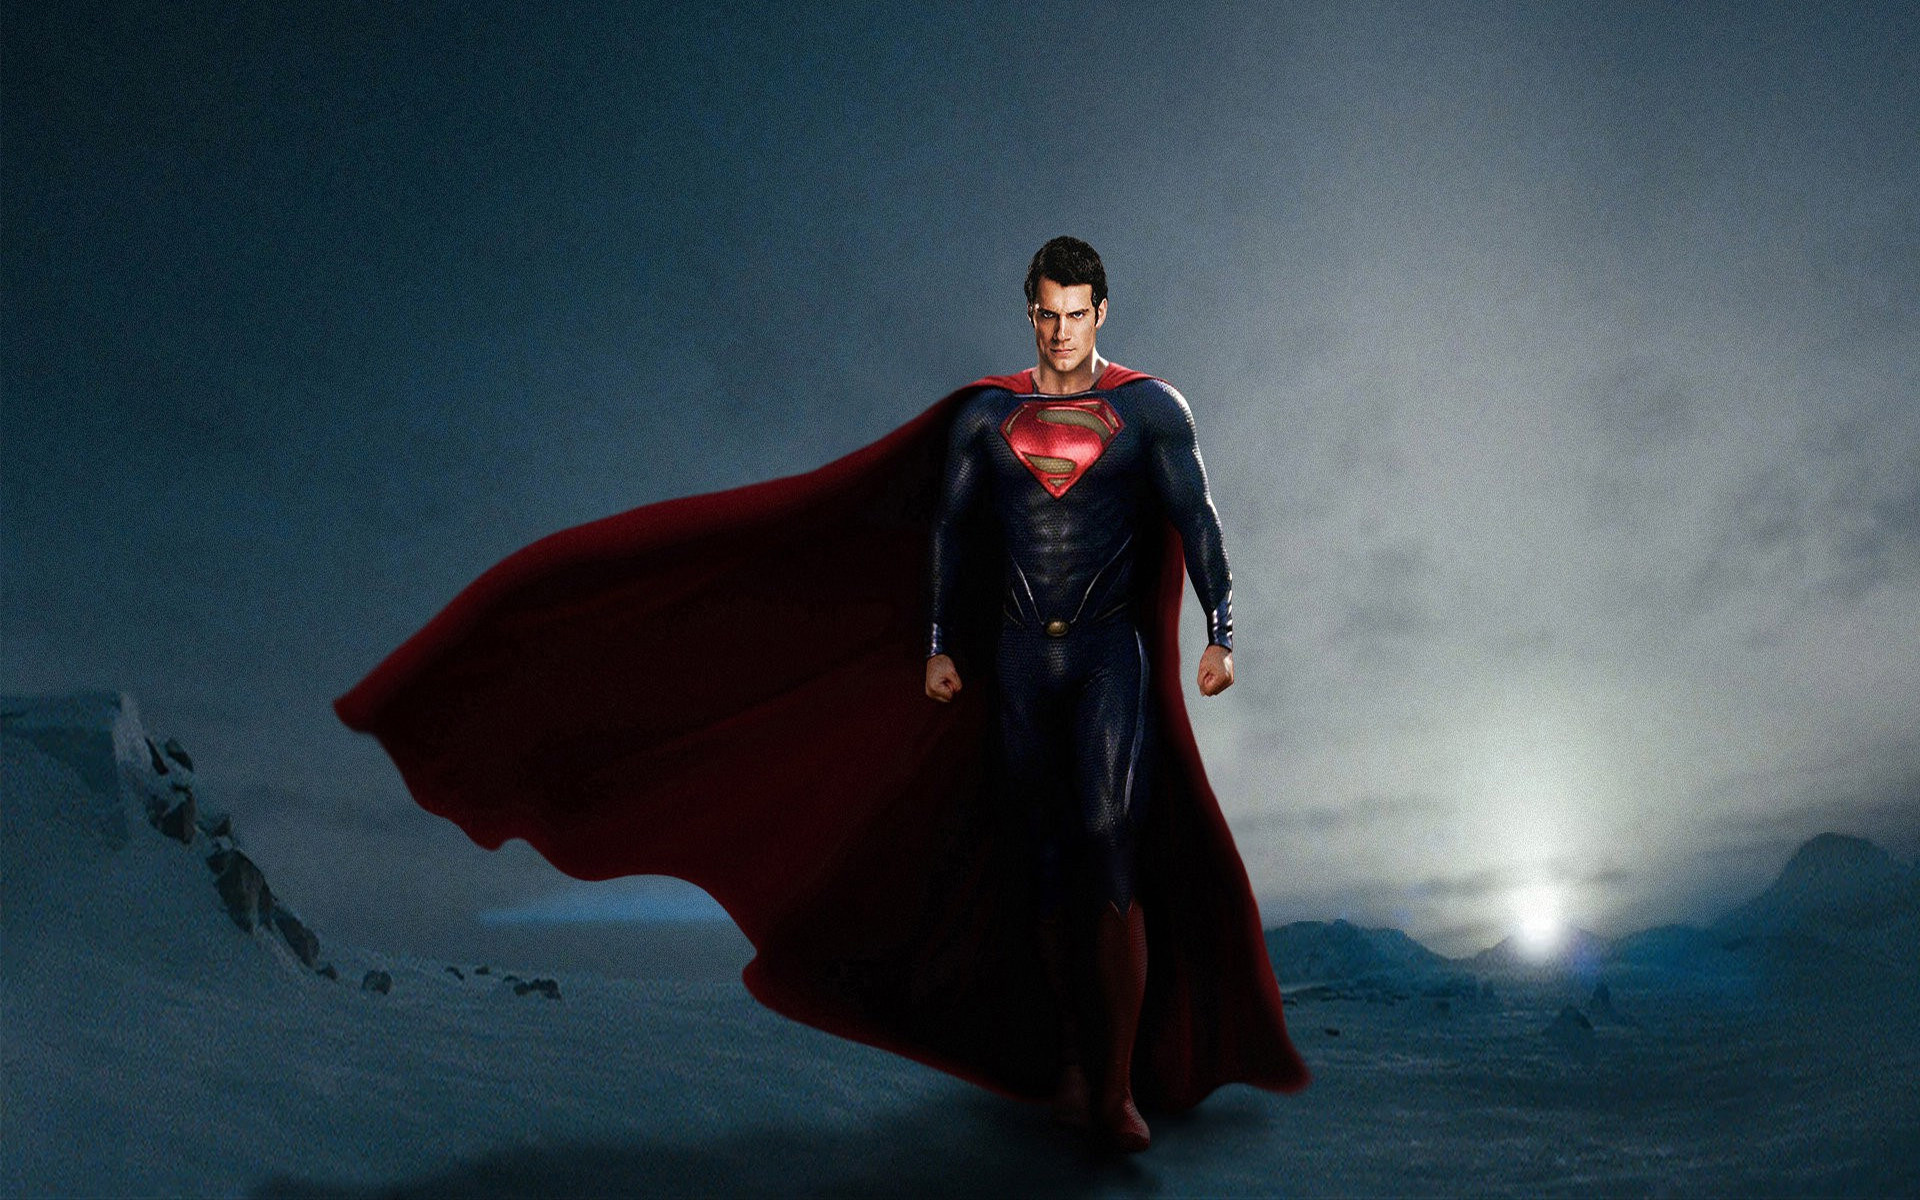 《超人:传承》曝进展 大卫·科伦斯韦领跑超人候选